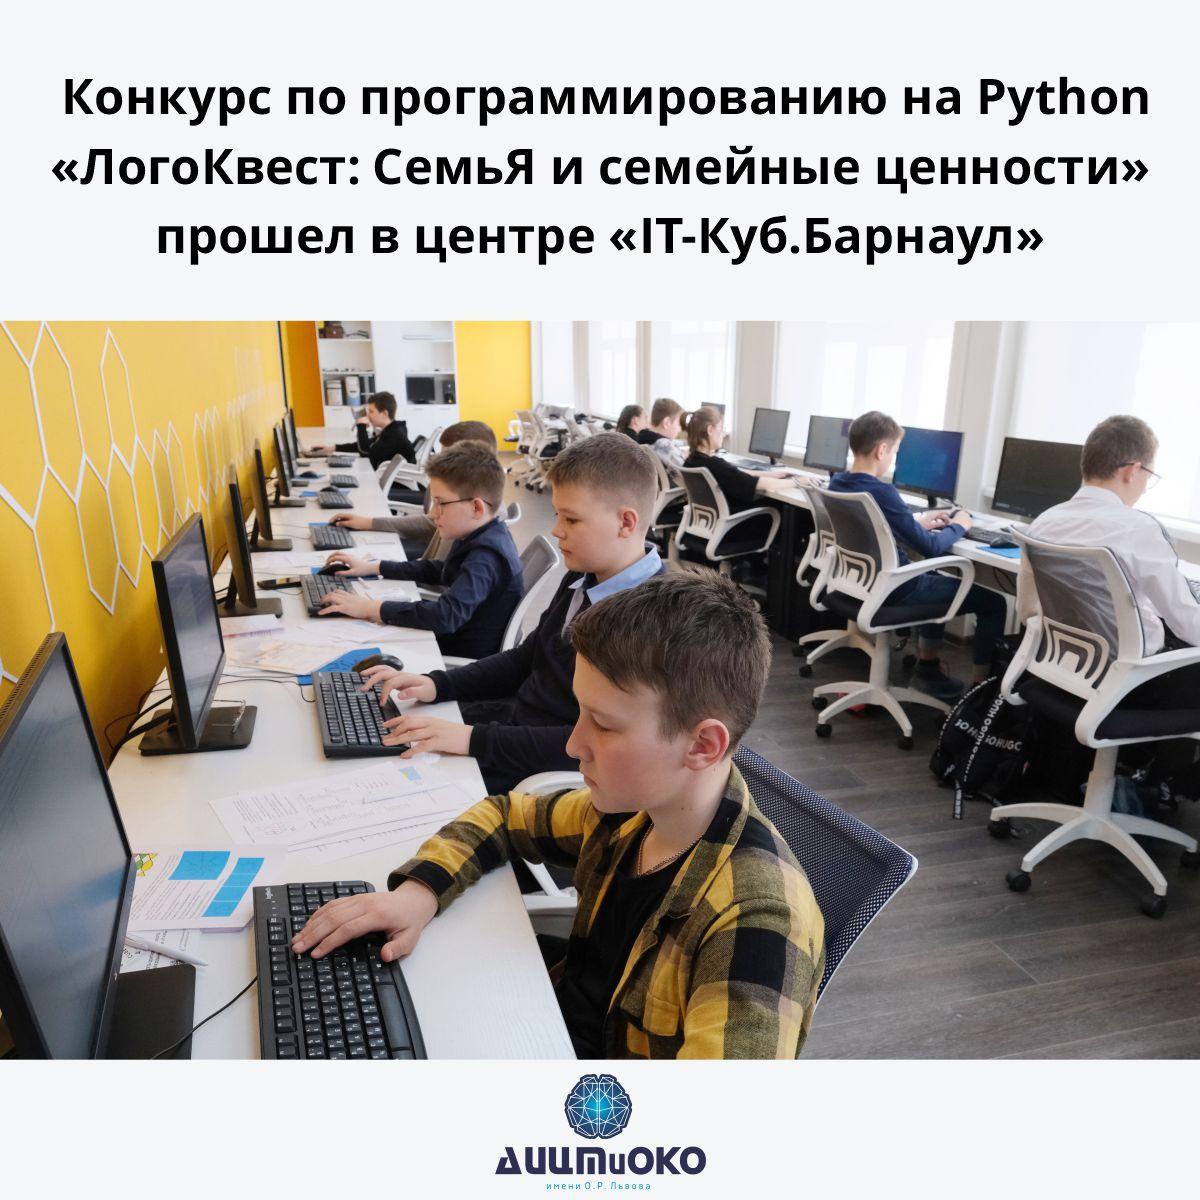 Региональный конкурс по программированию на Python для школьников «ЛогоКвест: СемьЯ и семейные ценности».